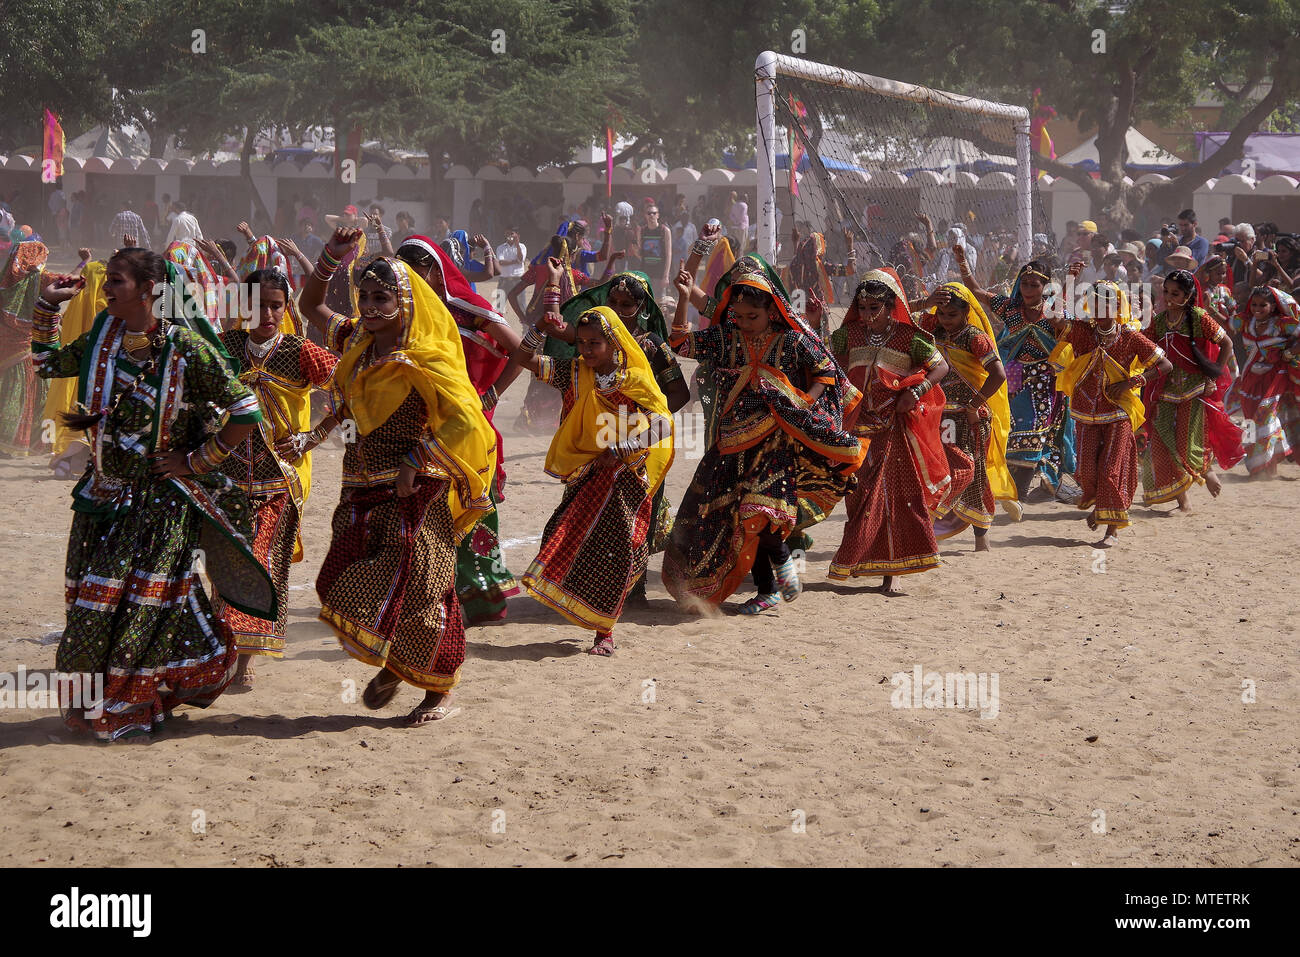 Portez les filles non identifiés de la danse ethnique traditionnel à Pushkar Mela au Rajasthan, Inde Banque D'Images